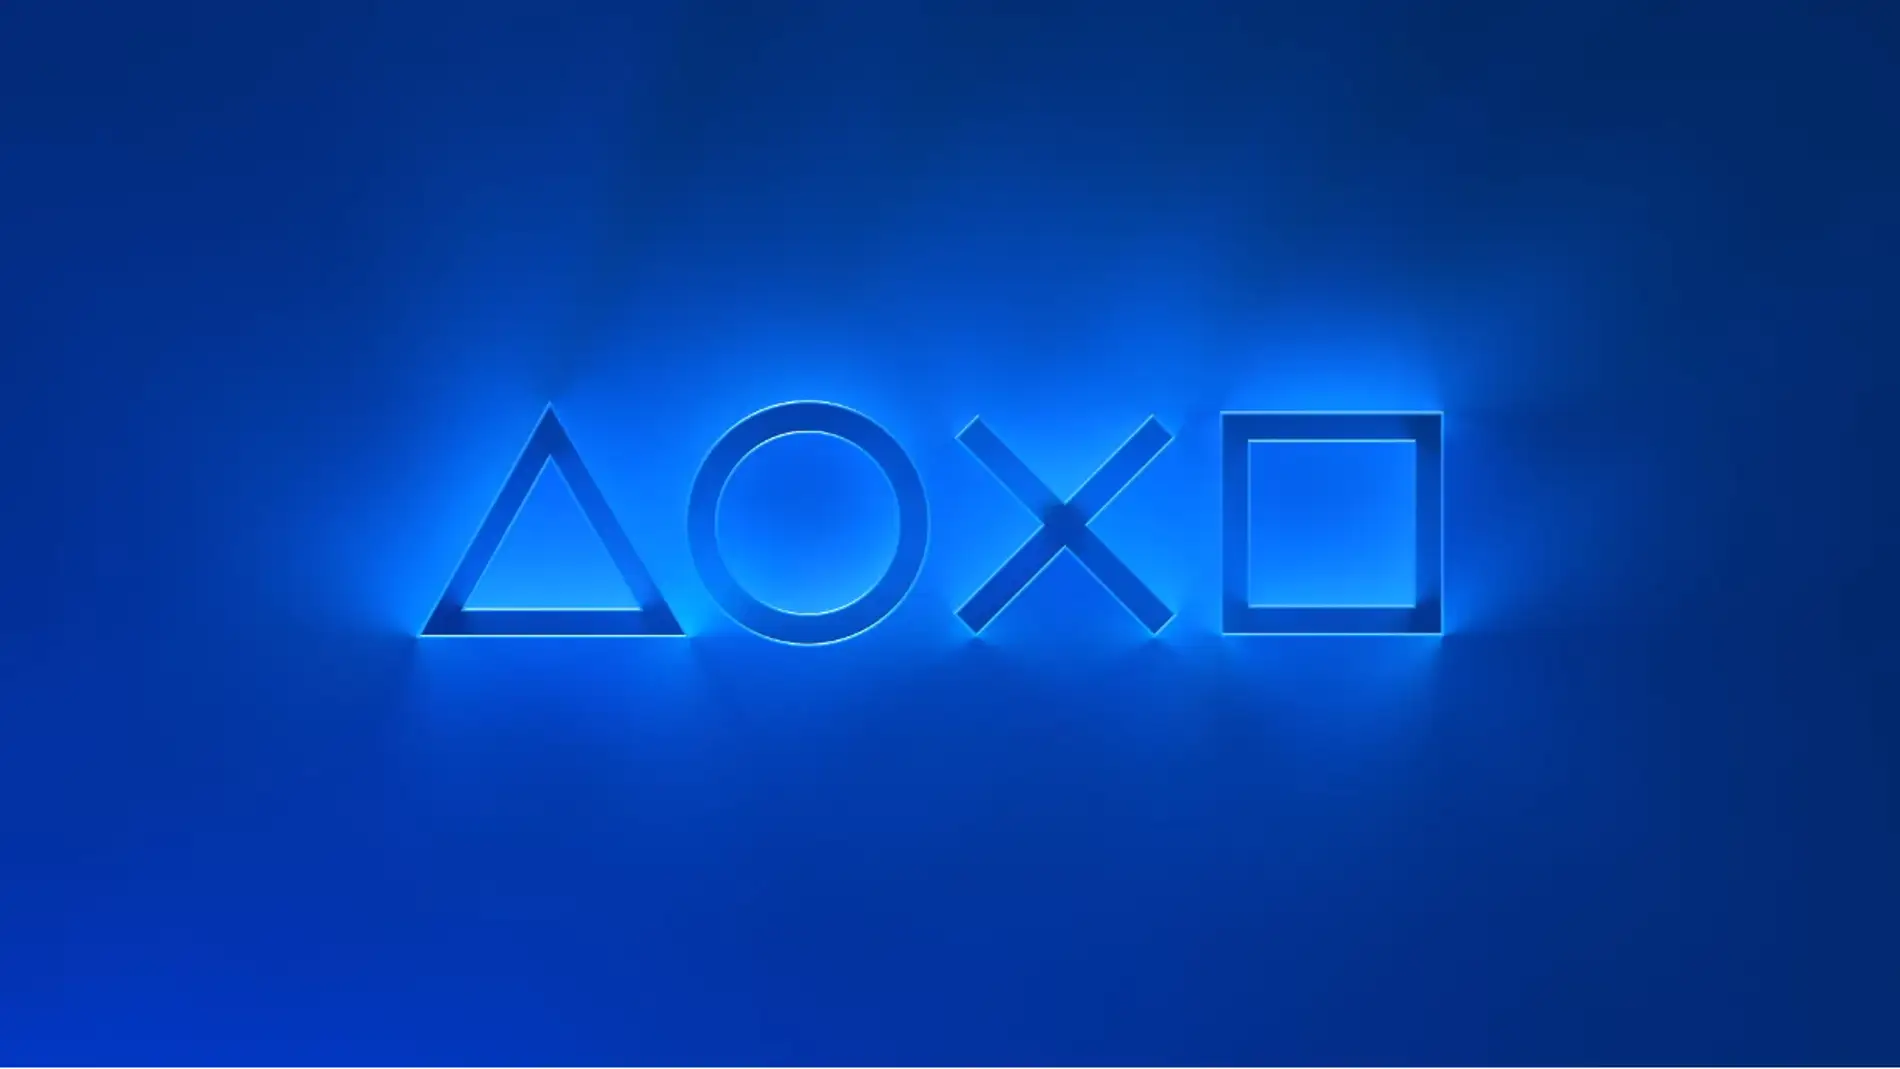 PlayStation Showcase 2021: todos los tráilers y juegos de la conferencia de  Sony para PS5